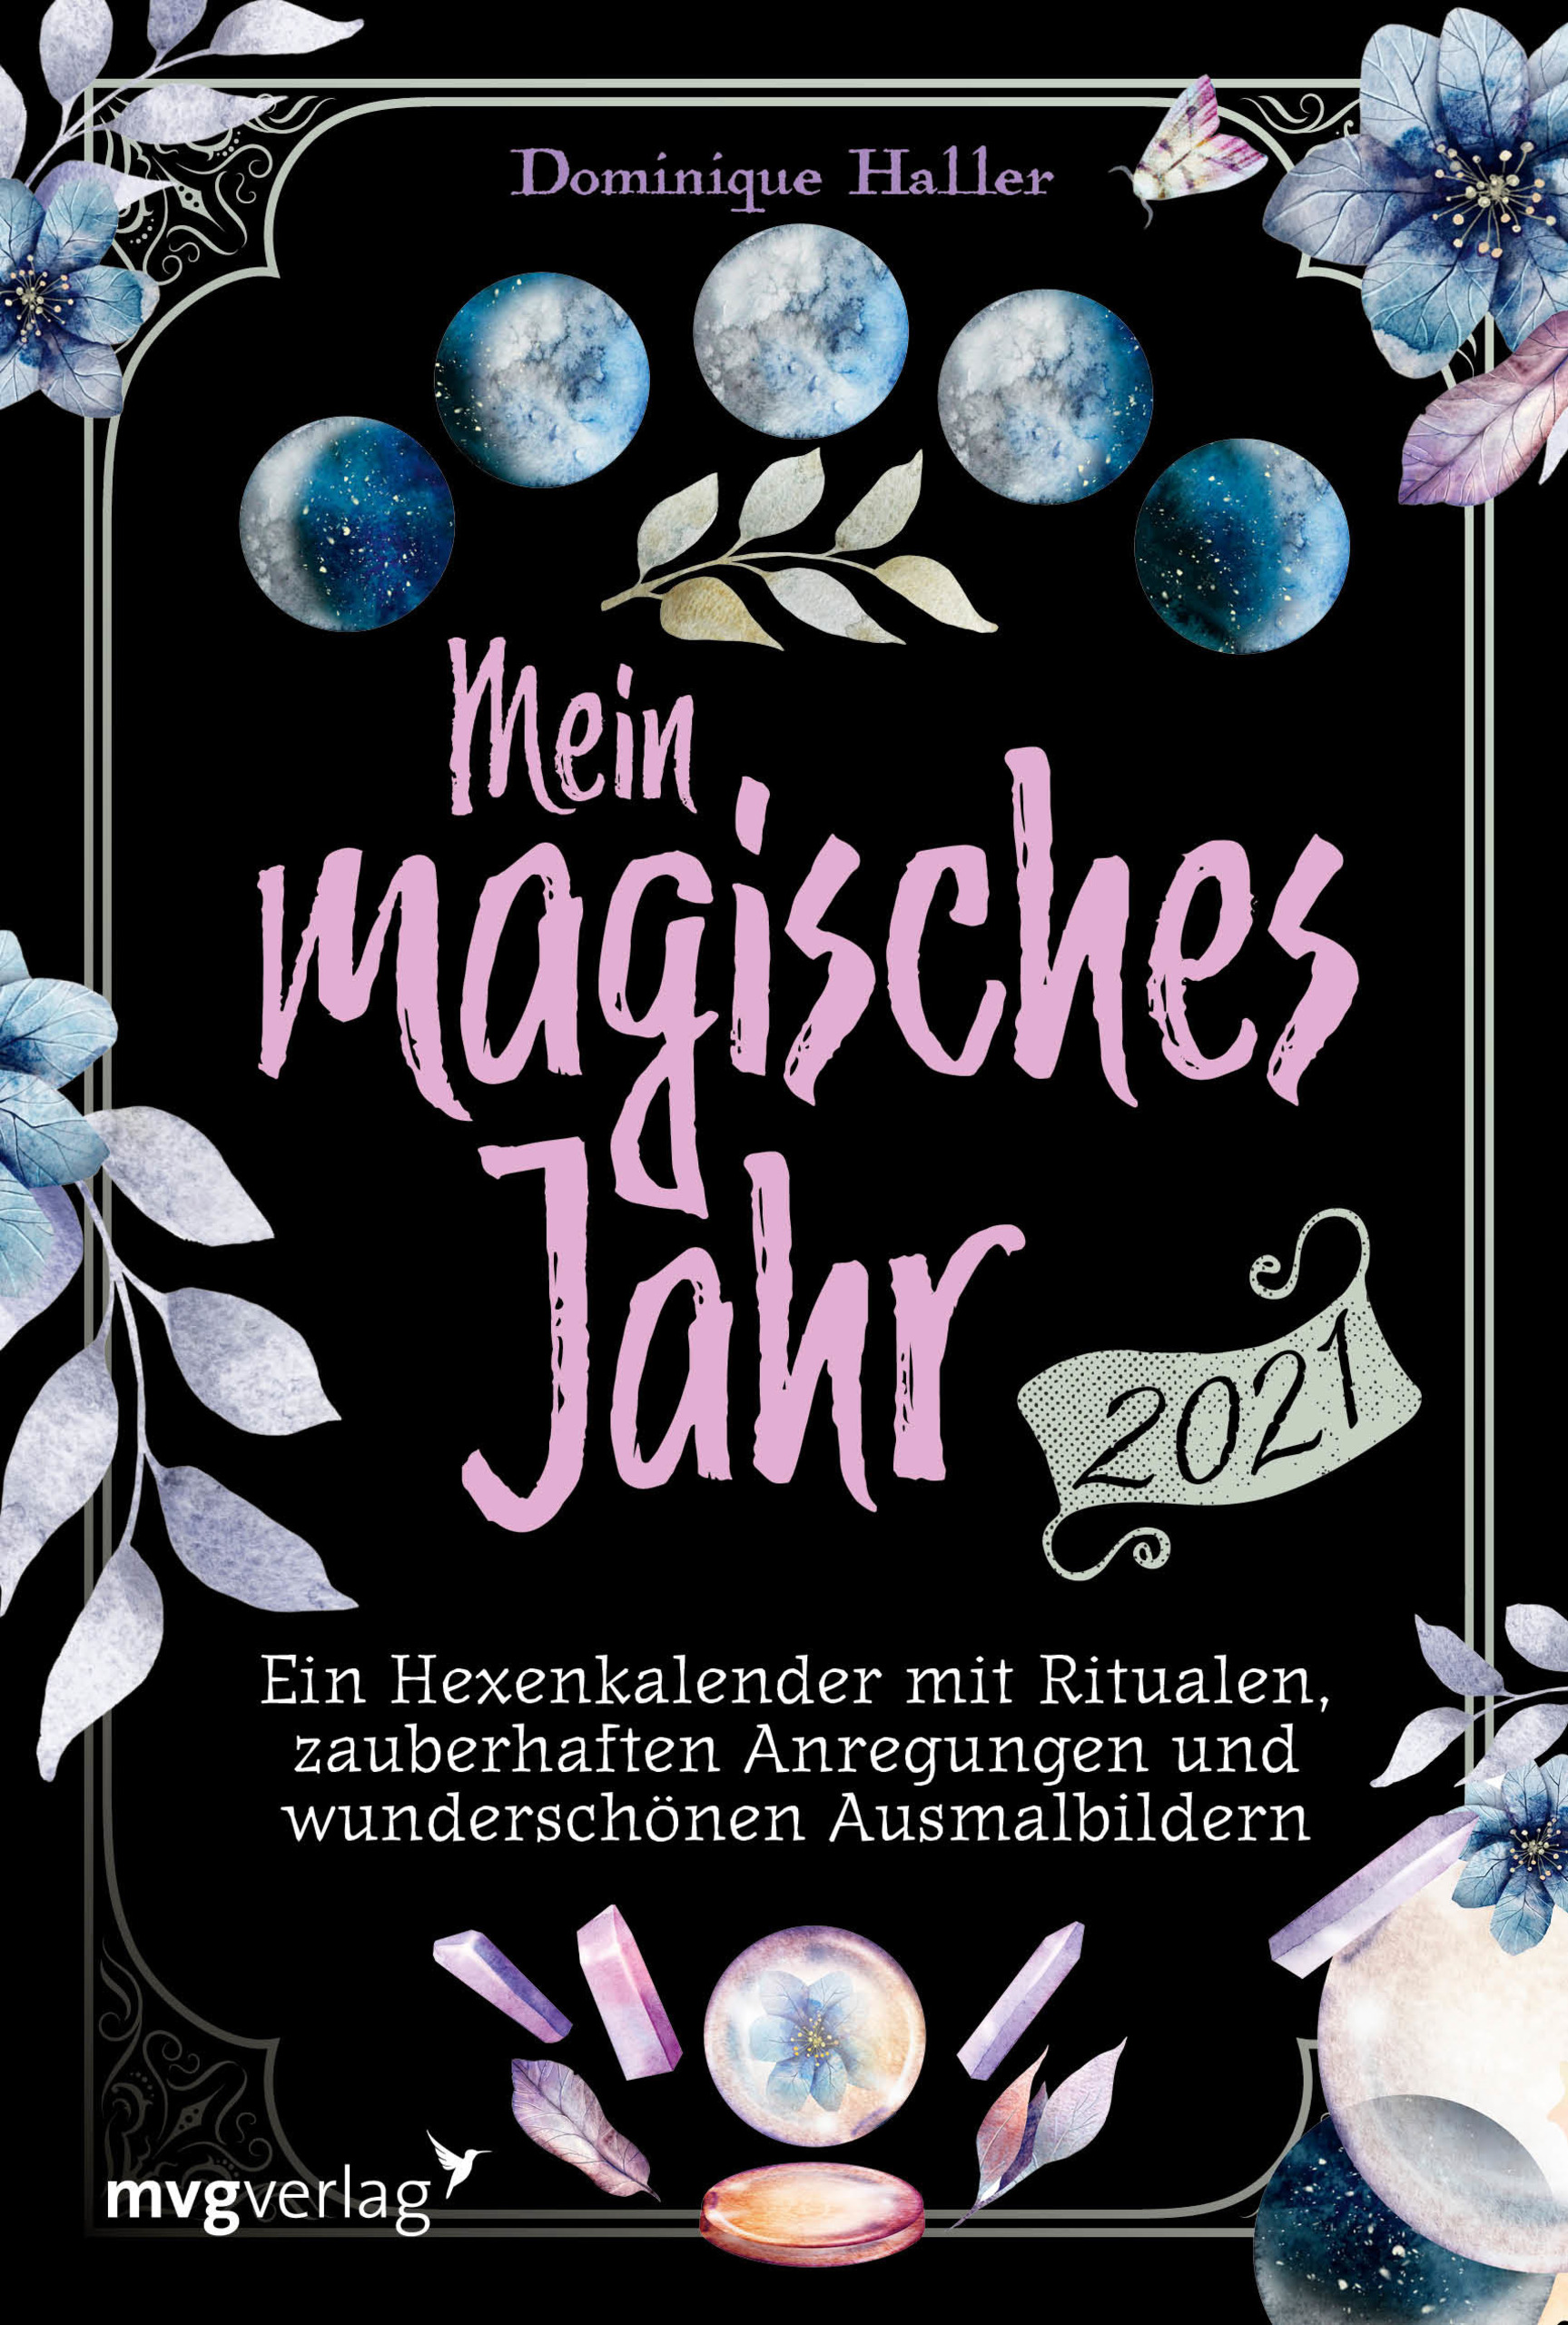 Vorstellung Kalender "Mein magisches Jahr 2021"